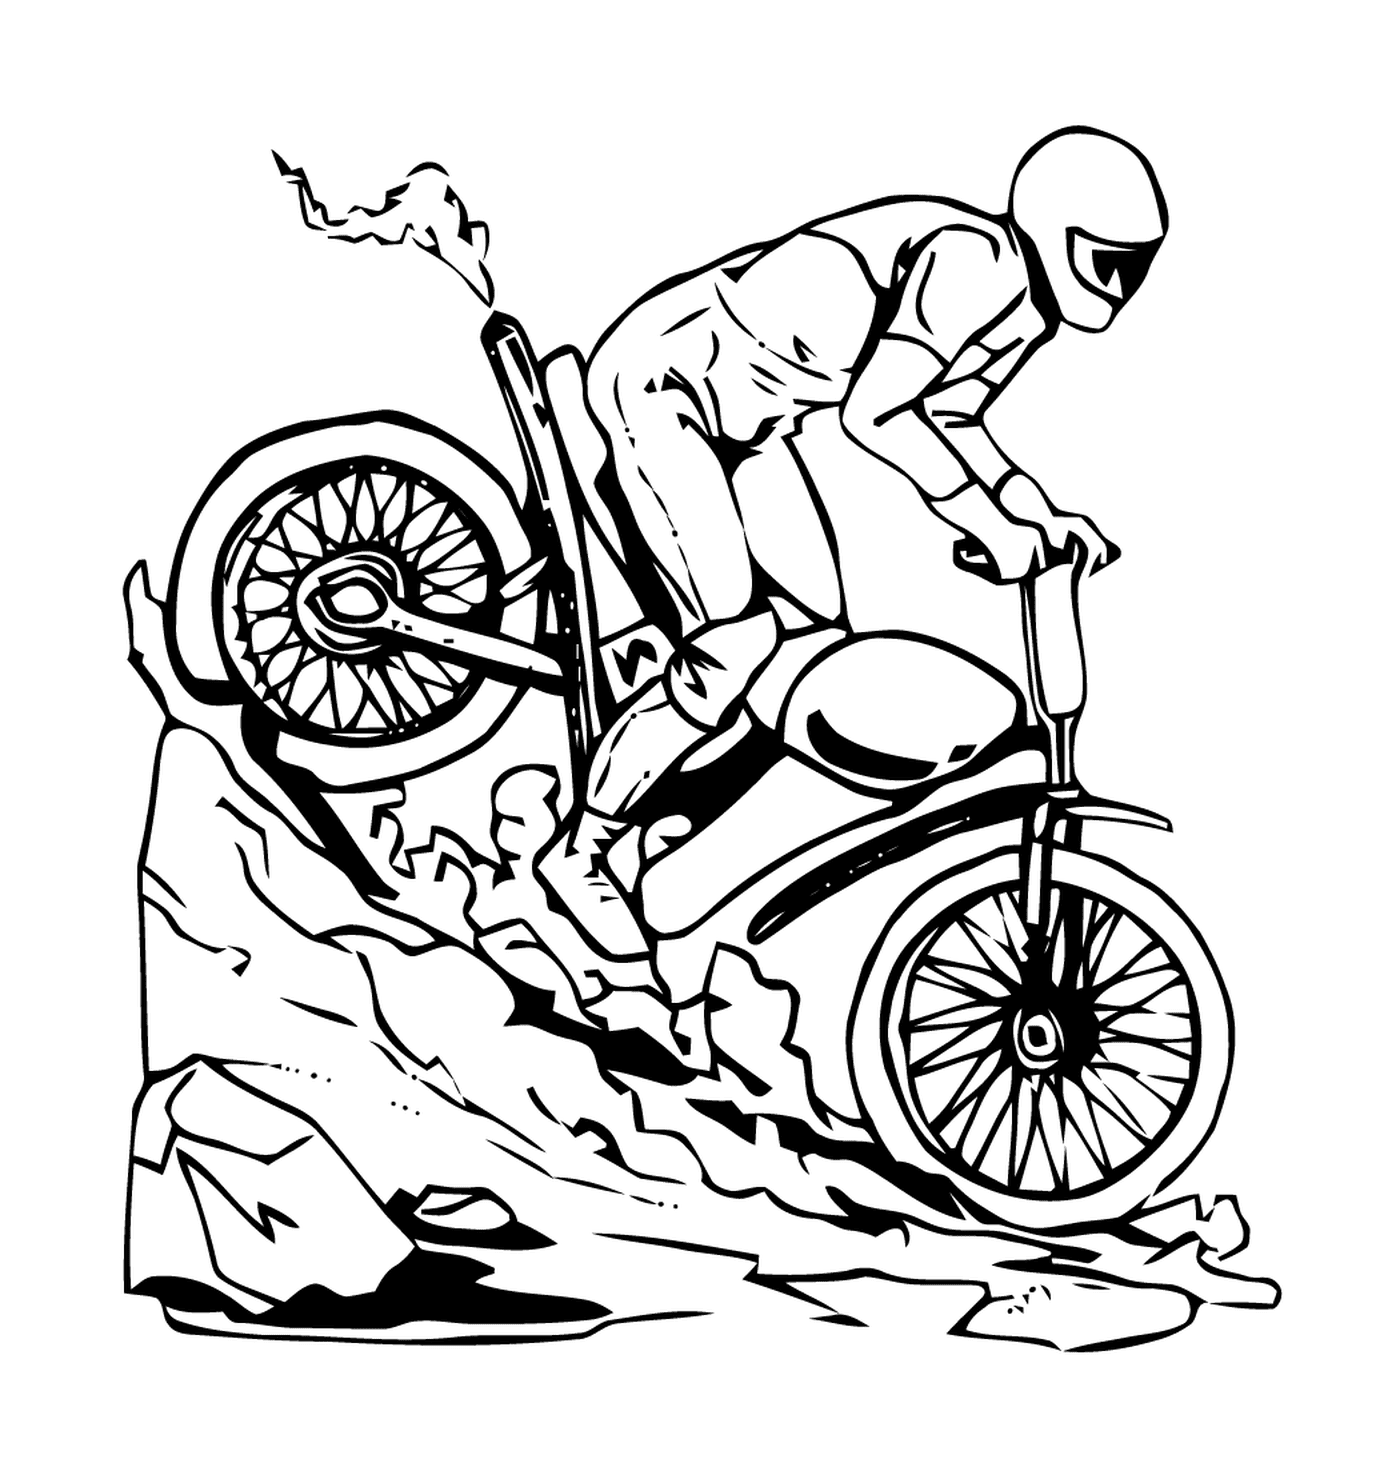  Homem em uma bicicleta descendo uma colina 